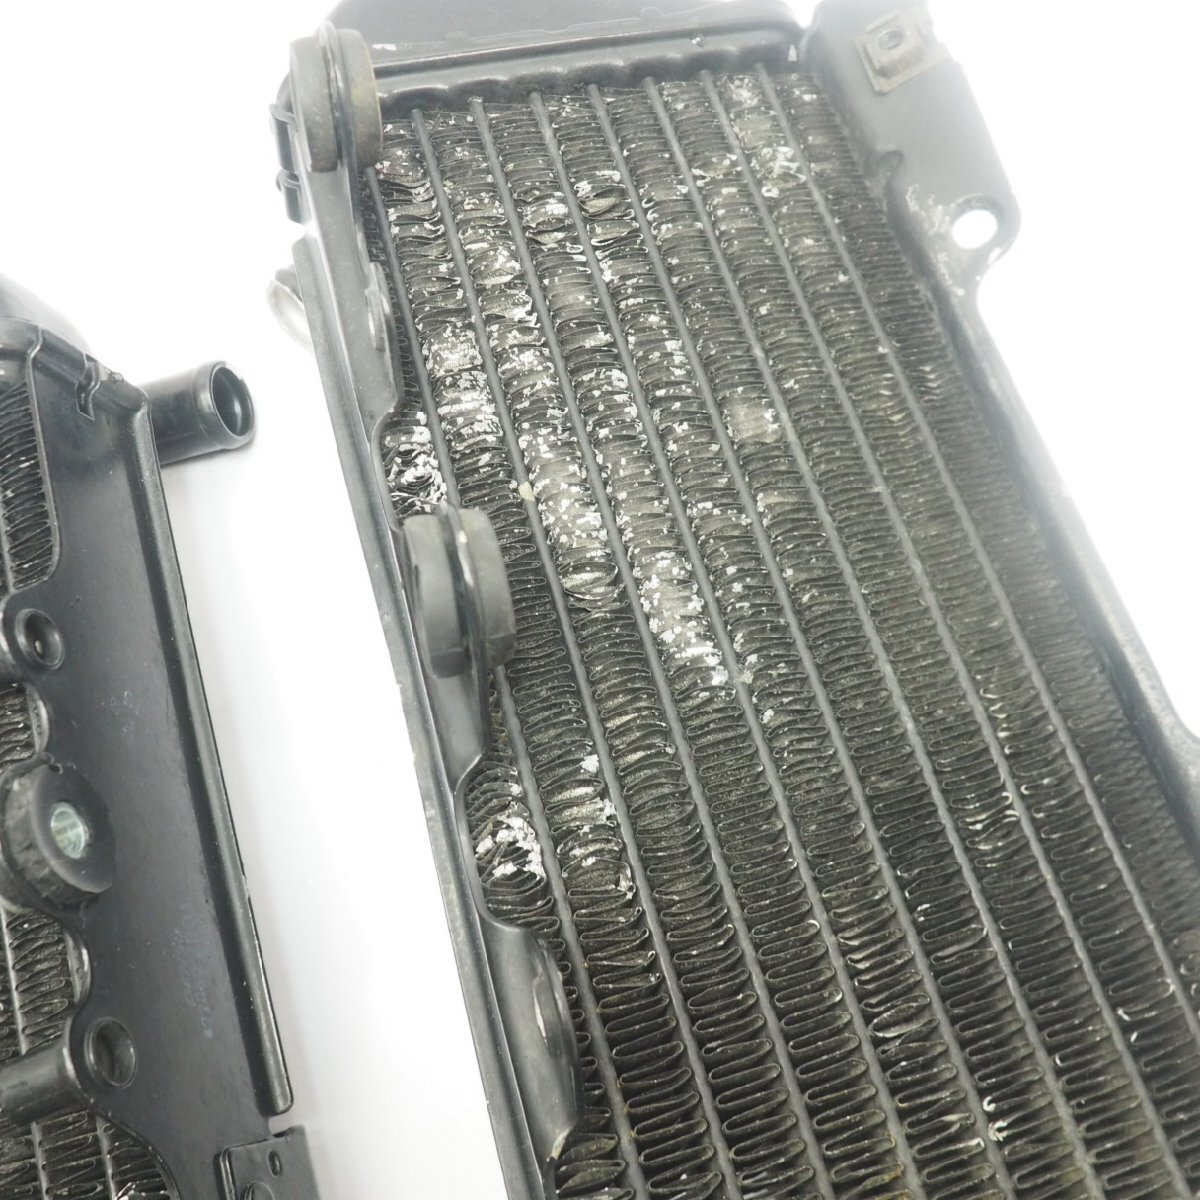 D... лак   радиатор  LX250E KLX250 radiator  ремонт  для  ...  охлаждение   устройство   ... автомобиль 